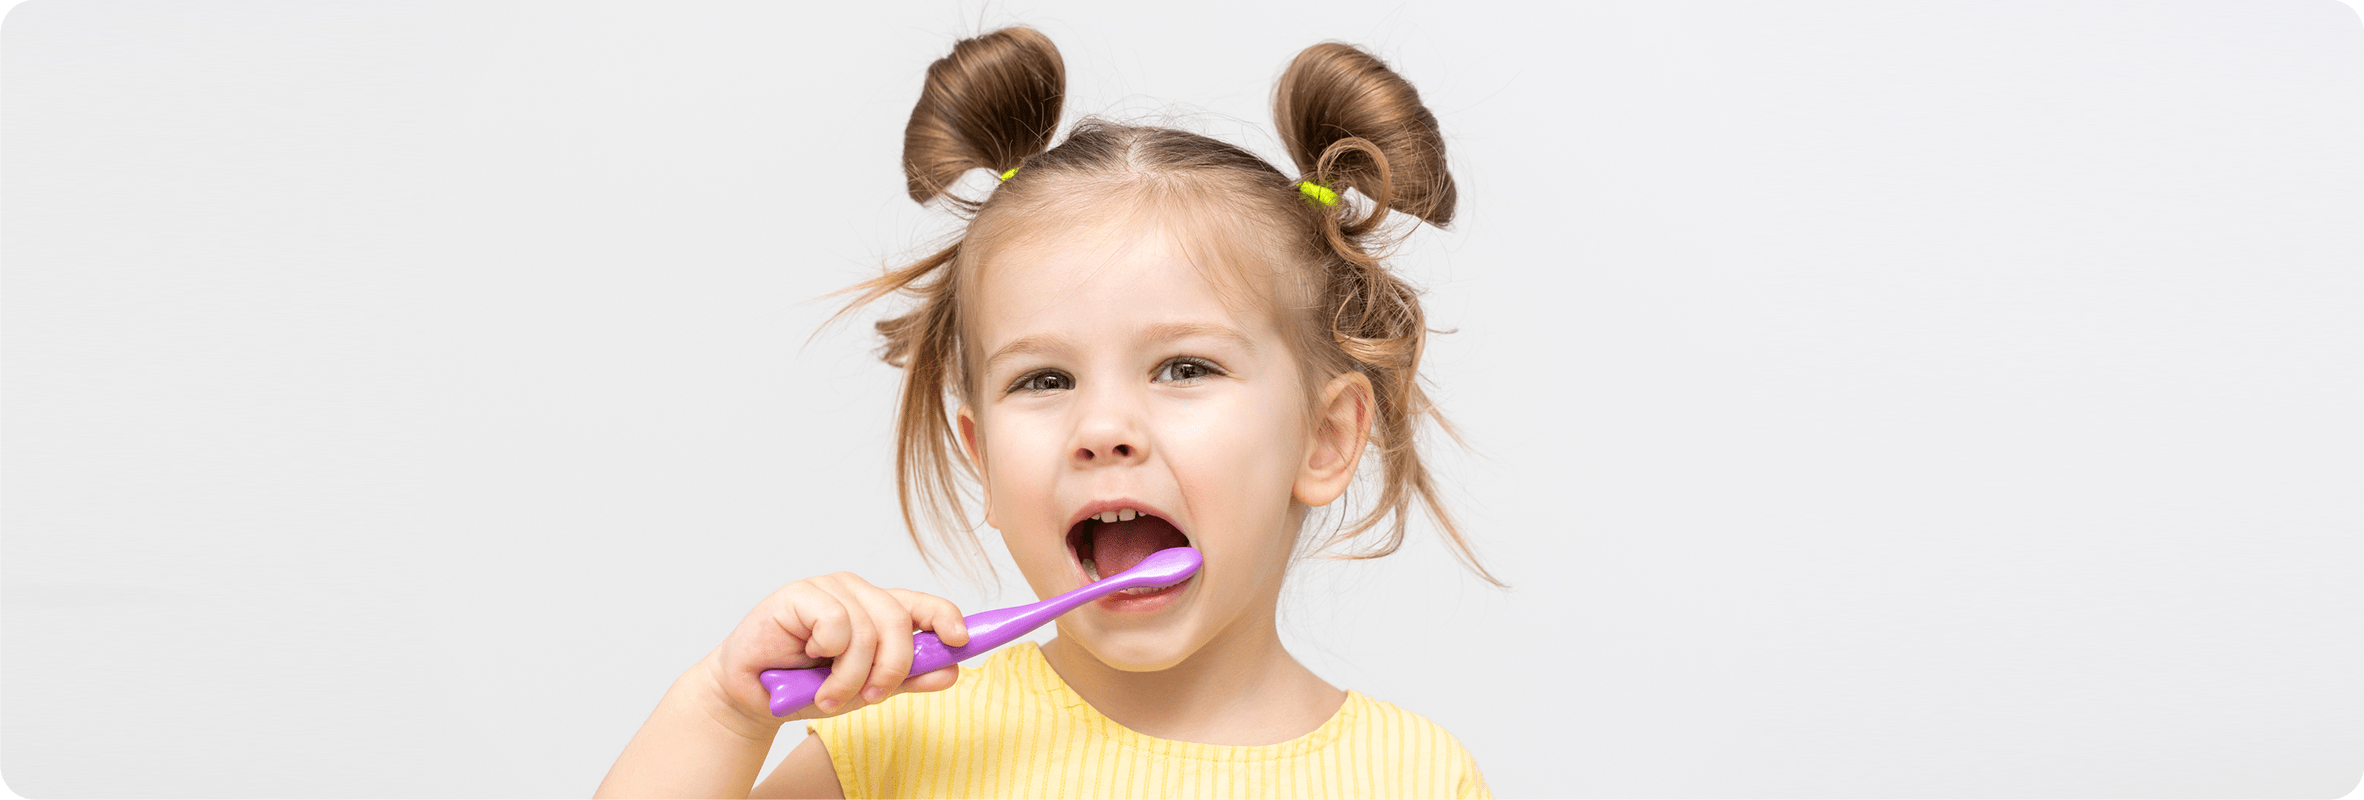 Обязательно ли чистить зубы два раза в день? - Стоматологическая клиника ЭлитДентал М